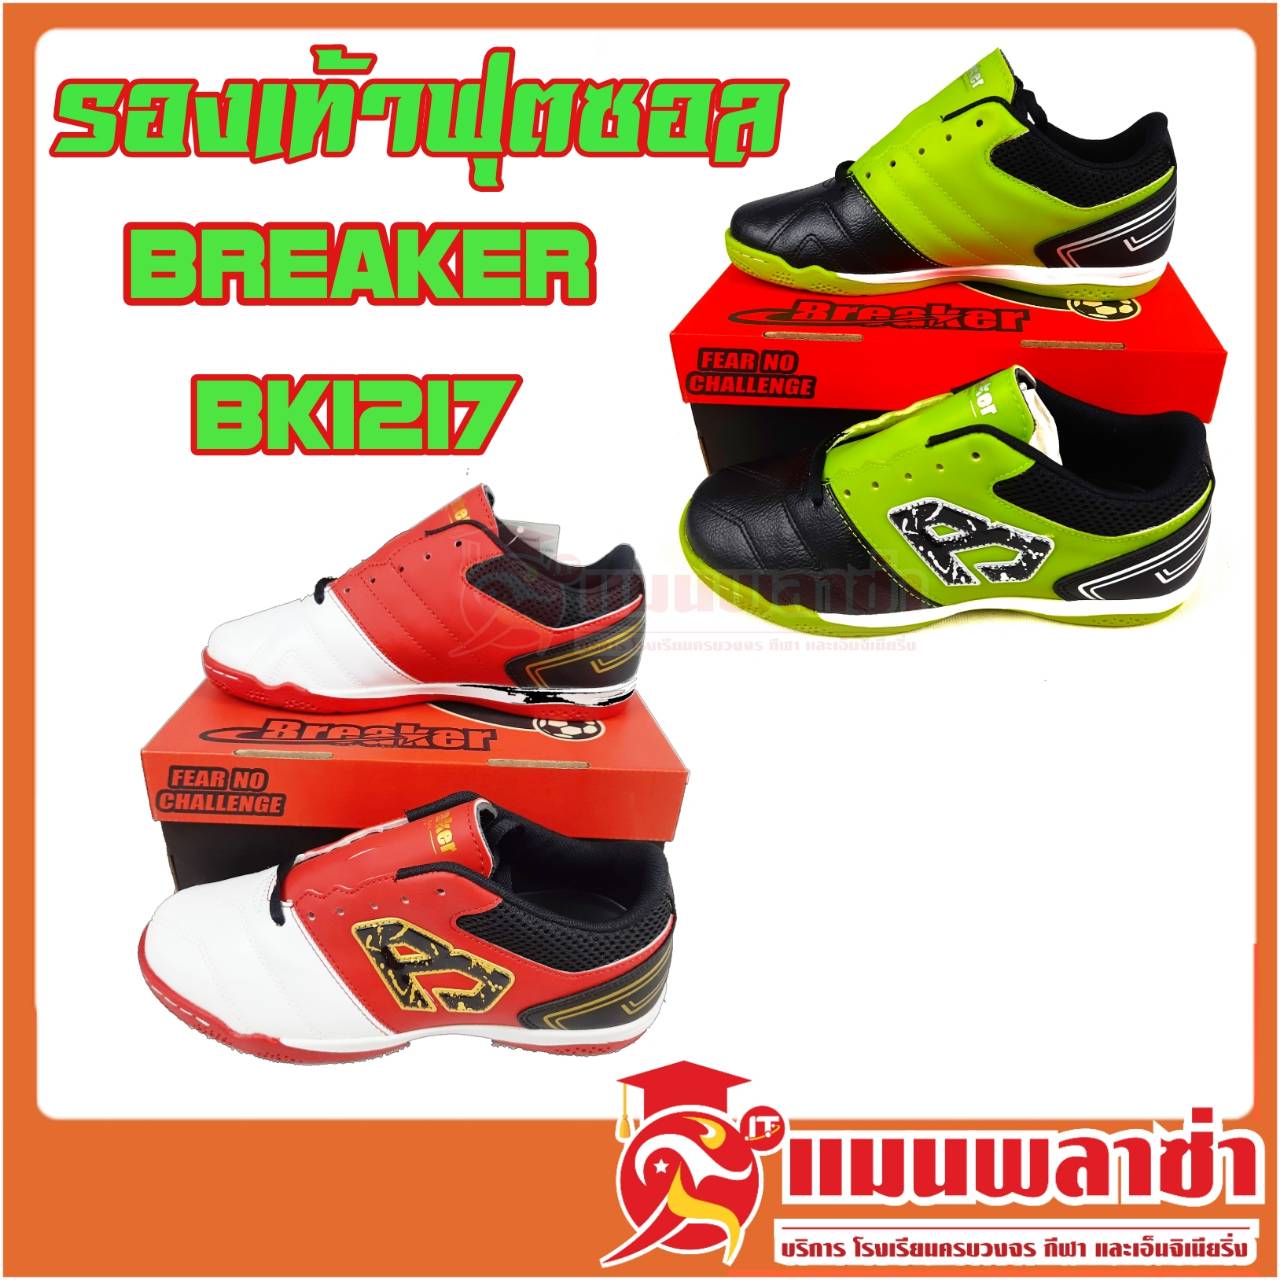 รองเท้าฟุตซอล Breaker BK1217 ของแท้ 100%